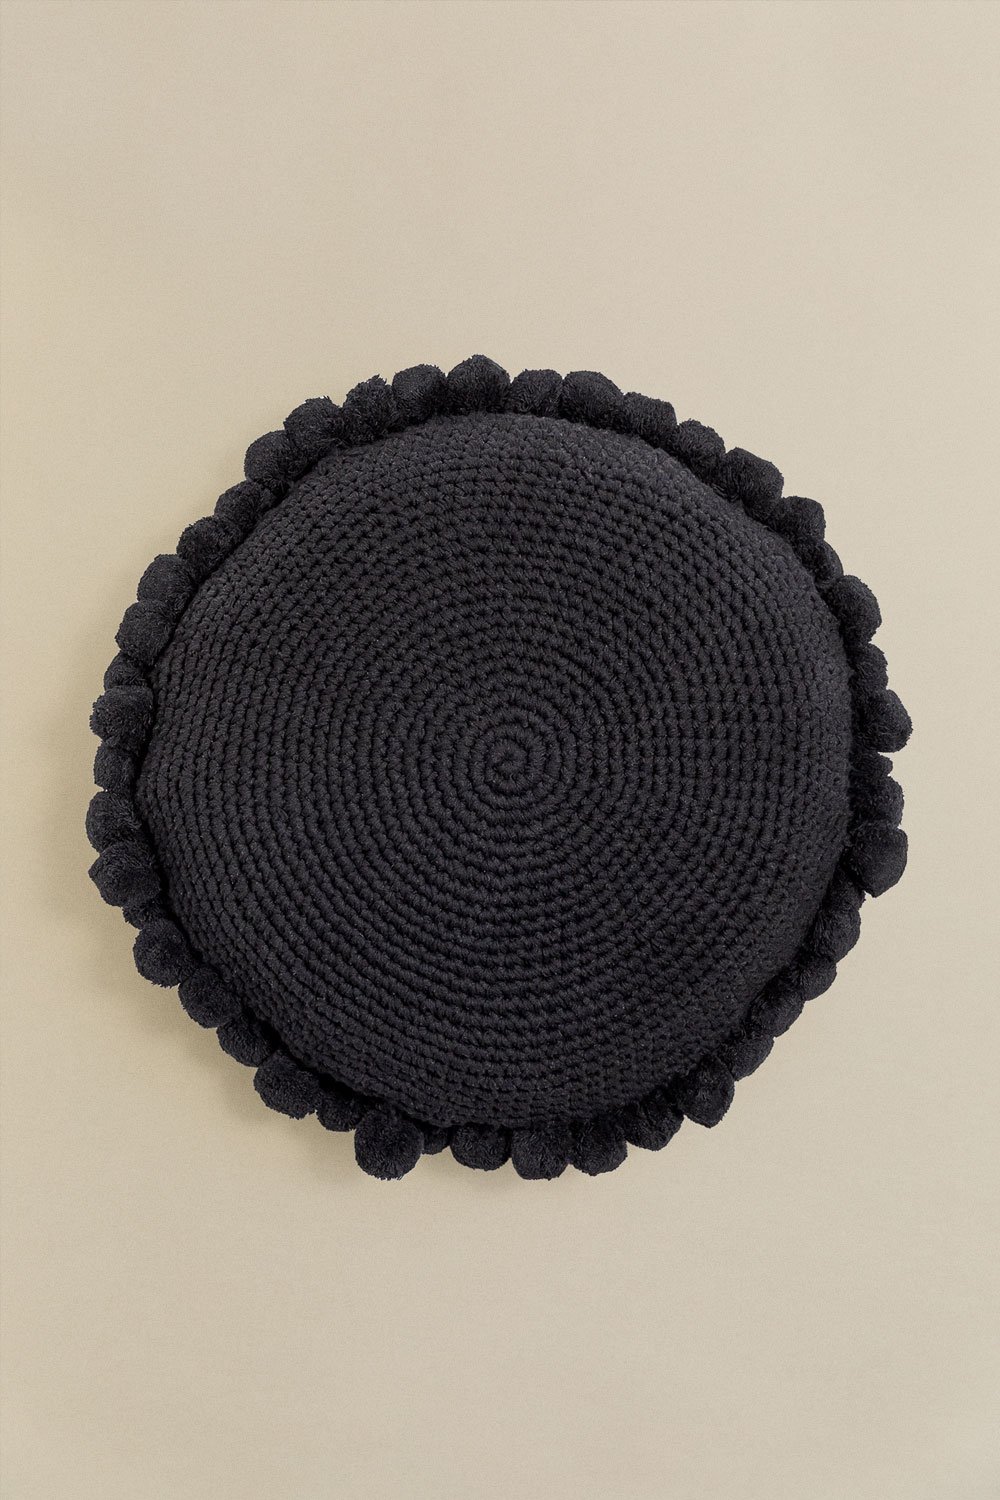 Cuscino rotondo in cotone (Ø50 cm) Yilda , immagine della galleria 1